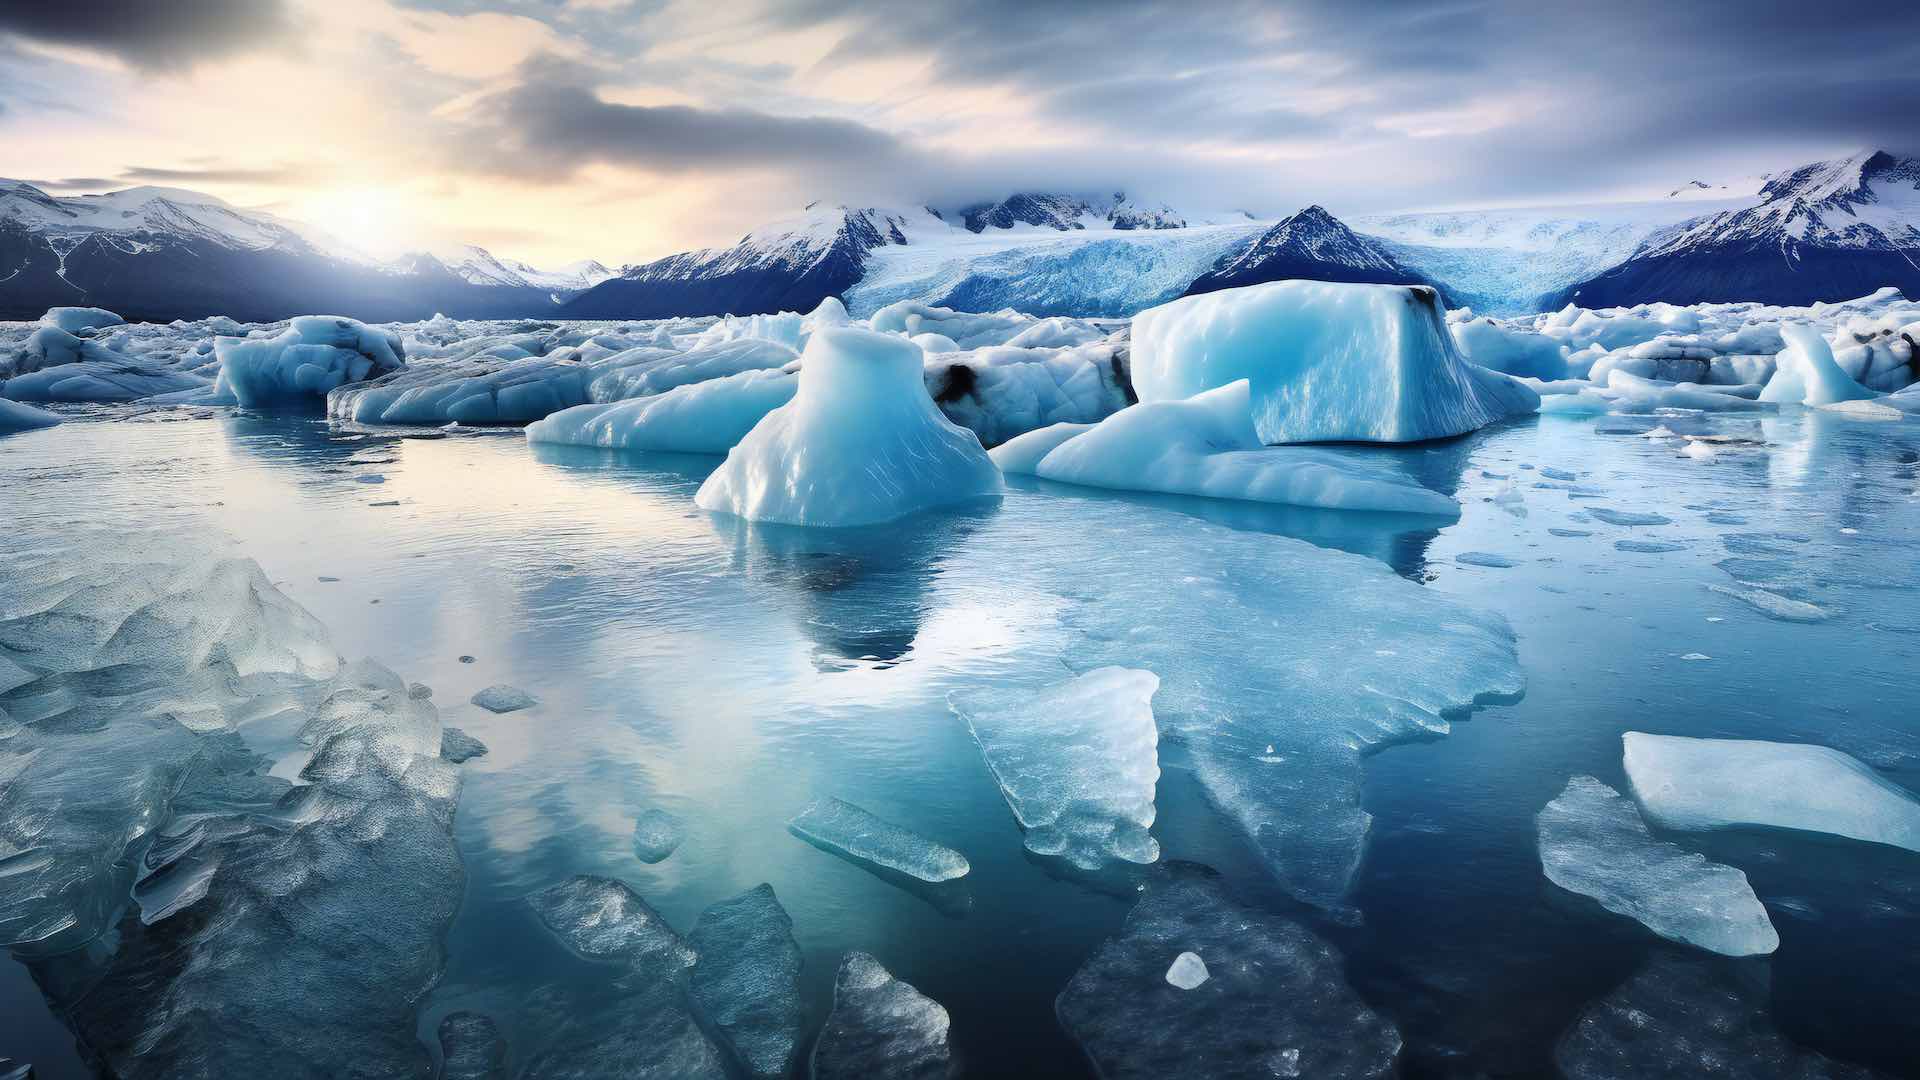 څیړنه وایی د ګرینلینډ یخ شیټ 20٪ ګړندی خوری